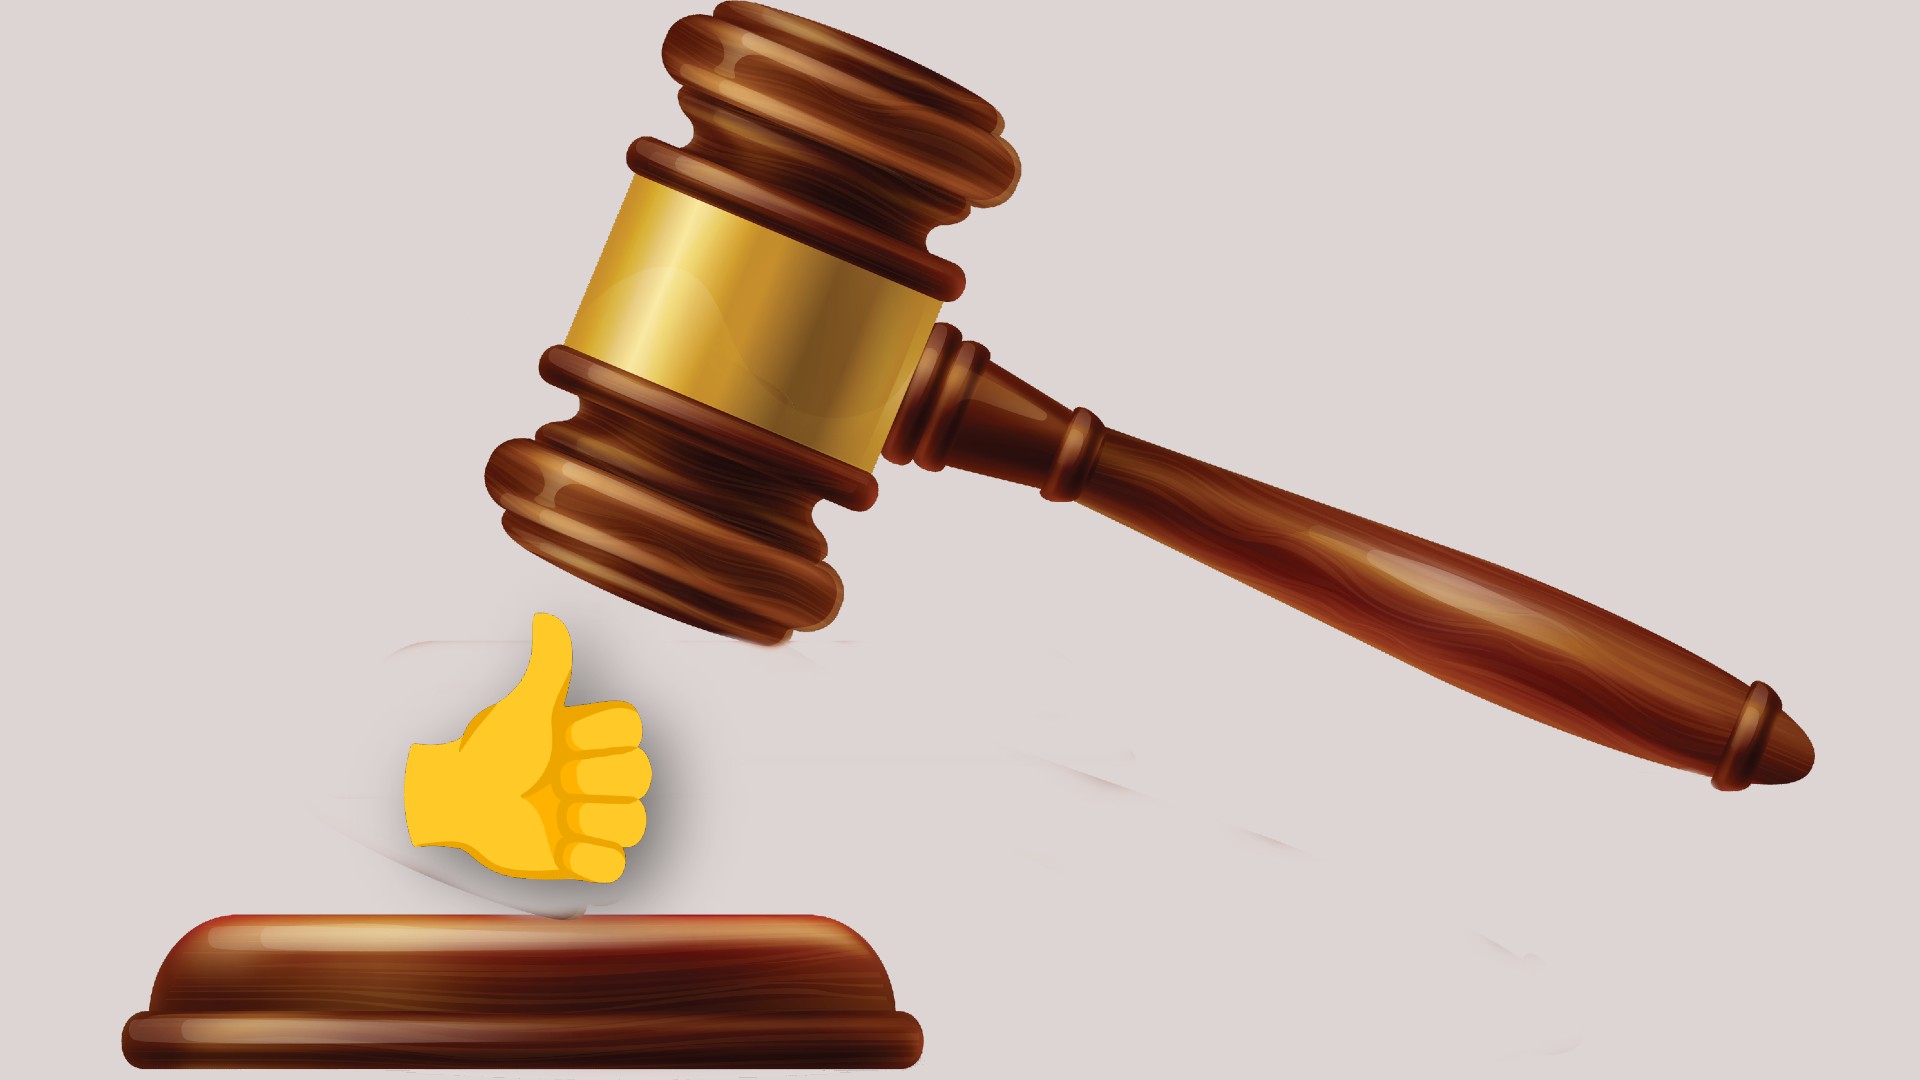 Montagem coloca o emoji do joinha prestes a ser martelado por um juiz